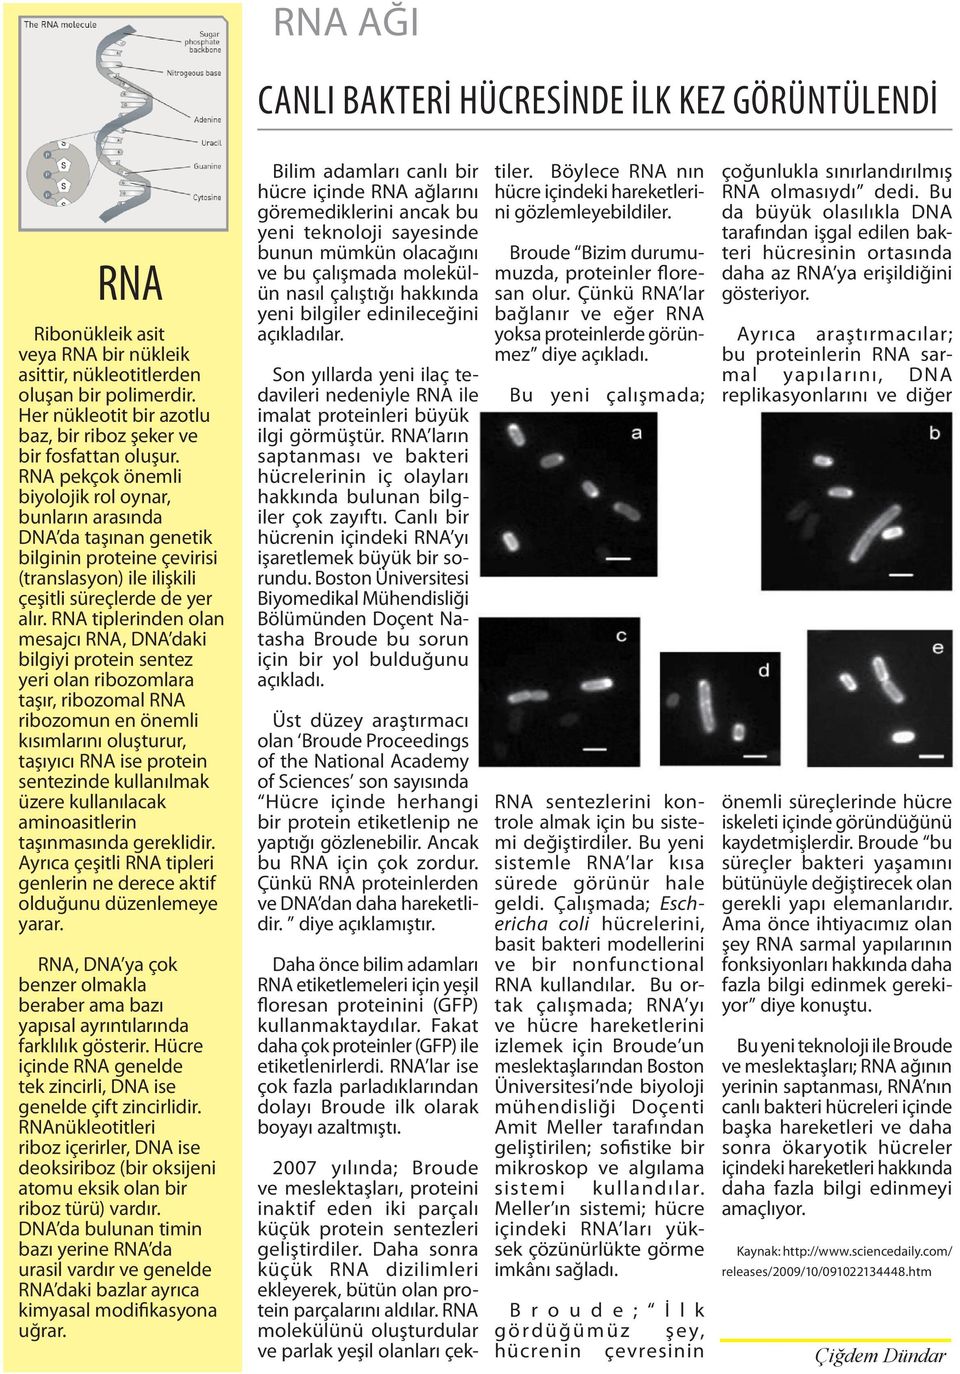 RNA pekçok önemli biyolojik rol oynar, bunların arasında DNA da taşınan genetik bilginin proteine çevirisi (translasyon) ile ilişkili çeşitli süreçlerde de yer alır.